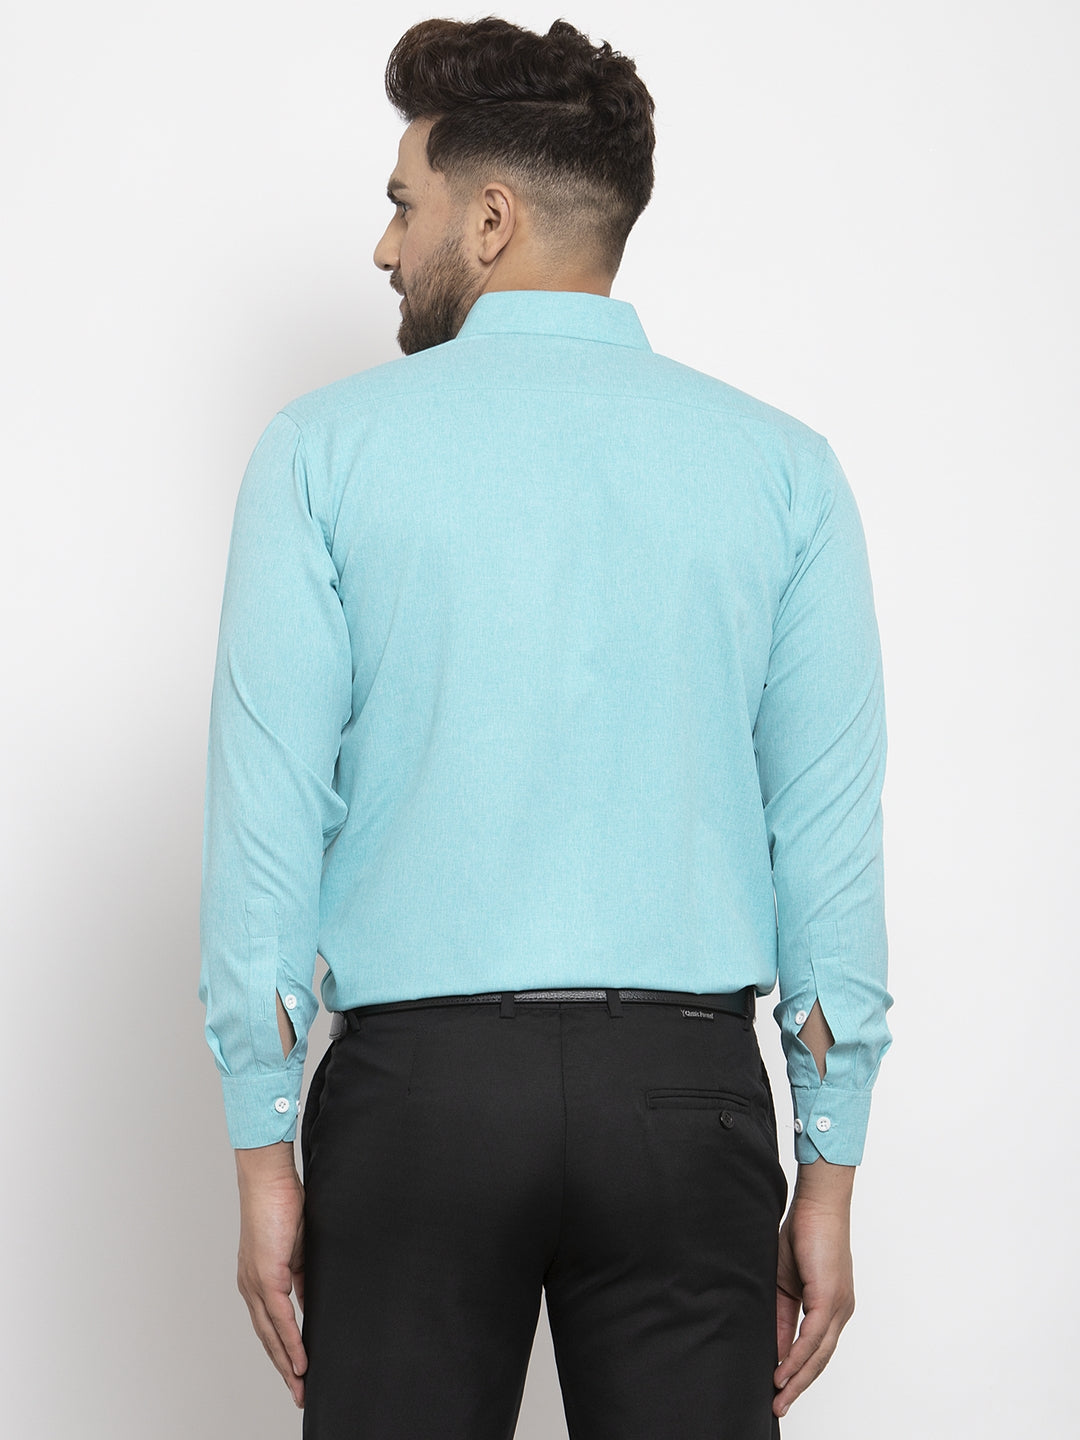 Men's Aqua Blue Formal Shirt with white detailing ( SF 419Aqua ) - Jainish